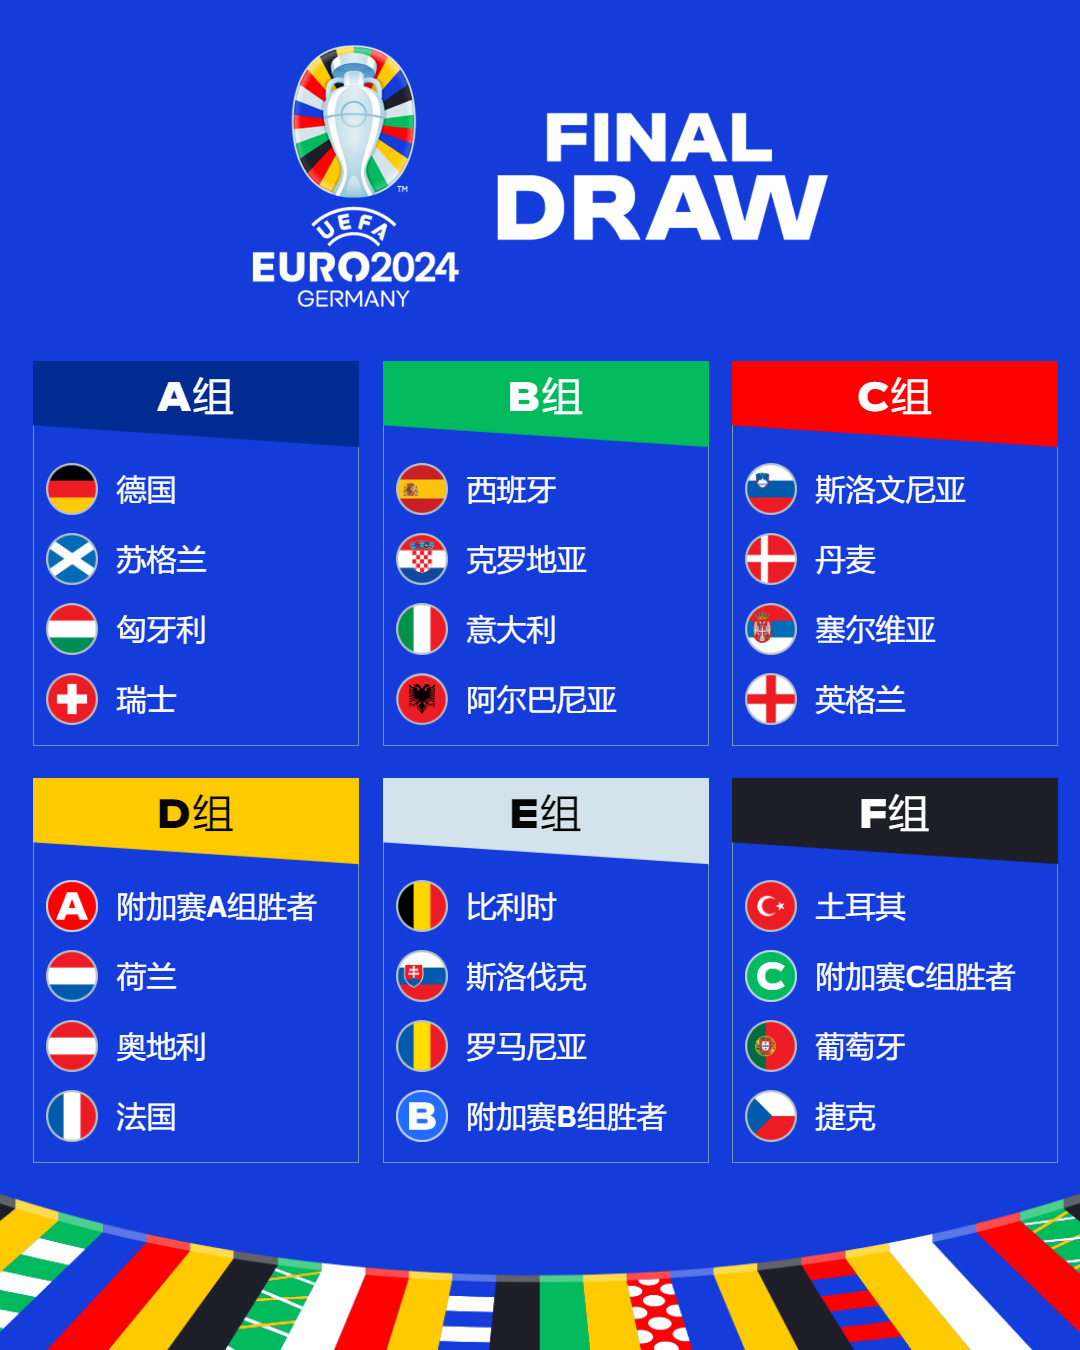 中企广告引欧媒讨论：欧洲杯大赢家不是欧洲人，而是中国品牌-今日头条